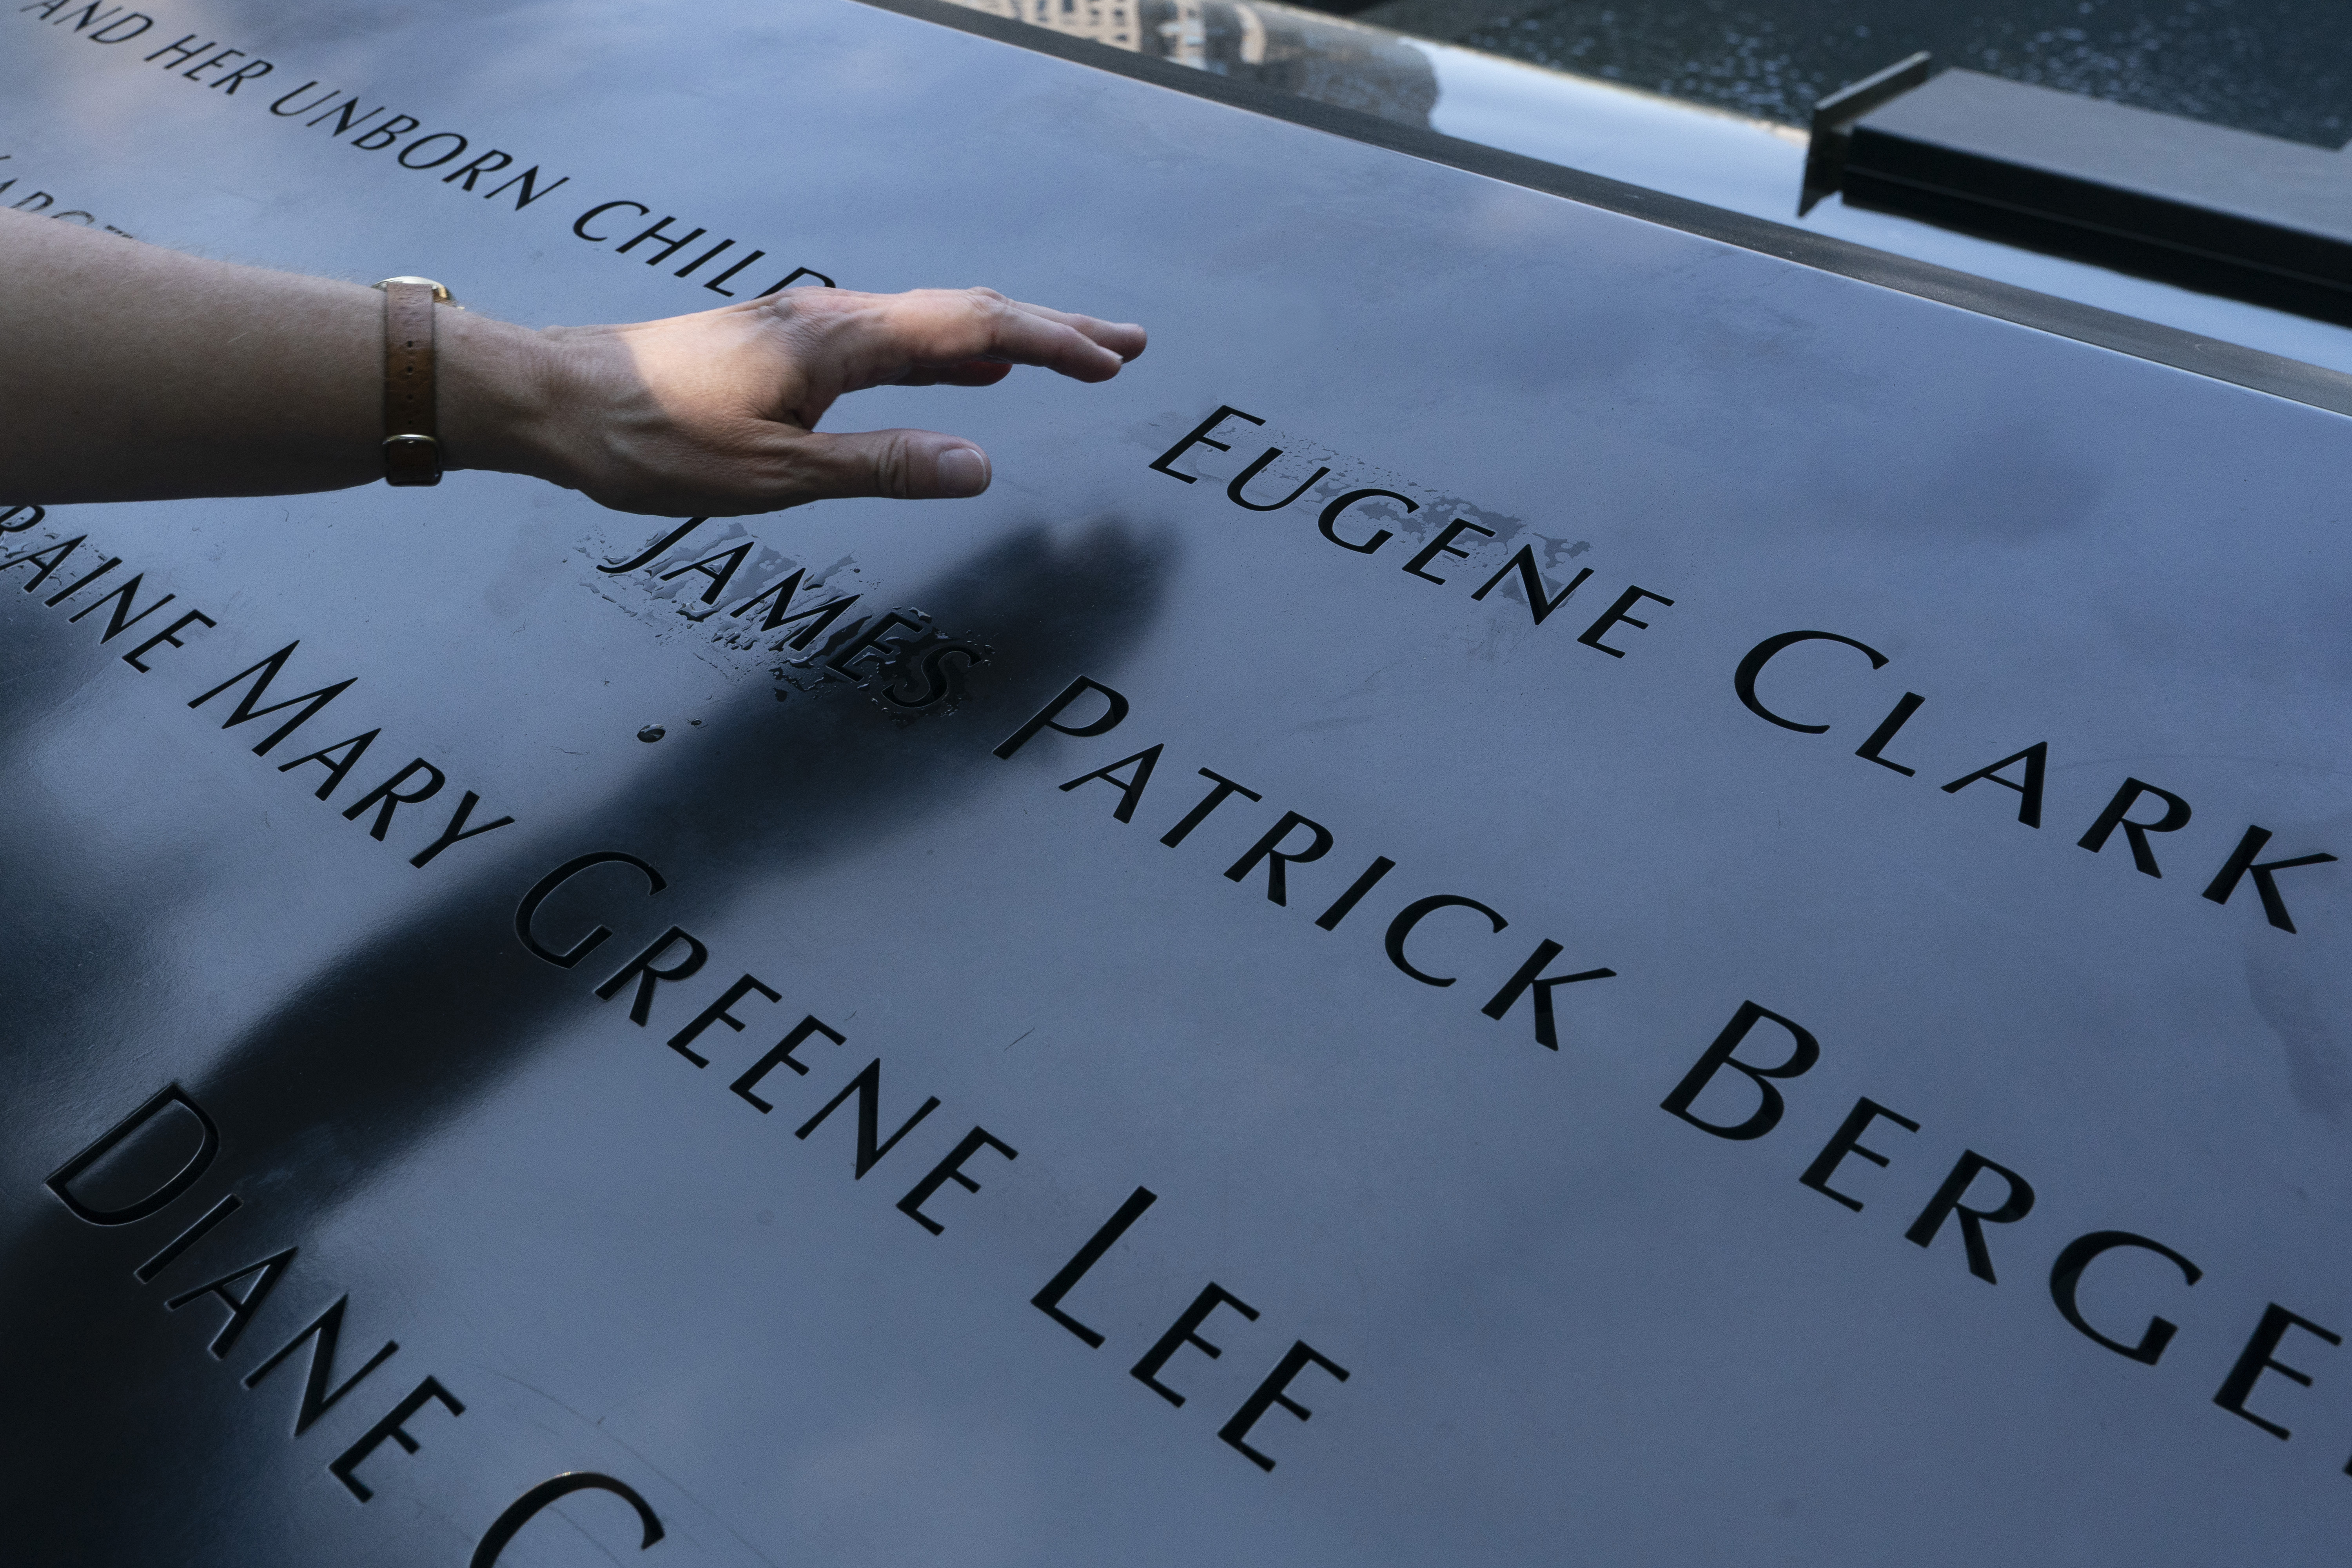 The September 11 memorial